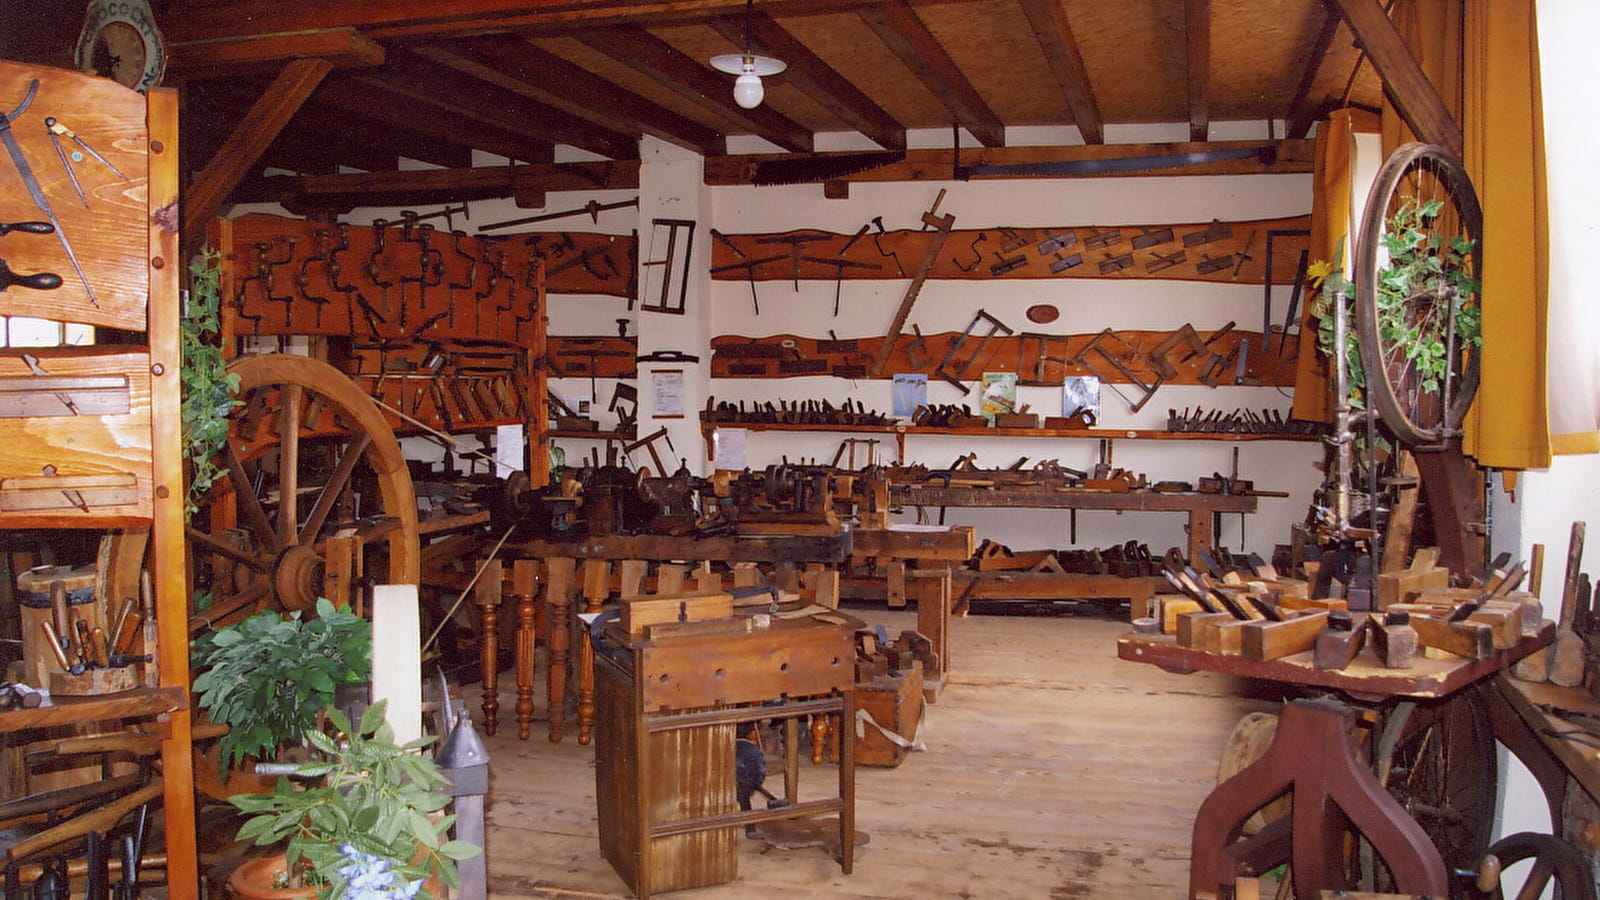 Musée Papotte (Artisanat et vie rurale)